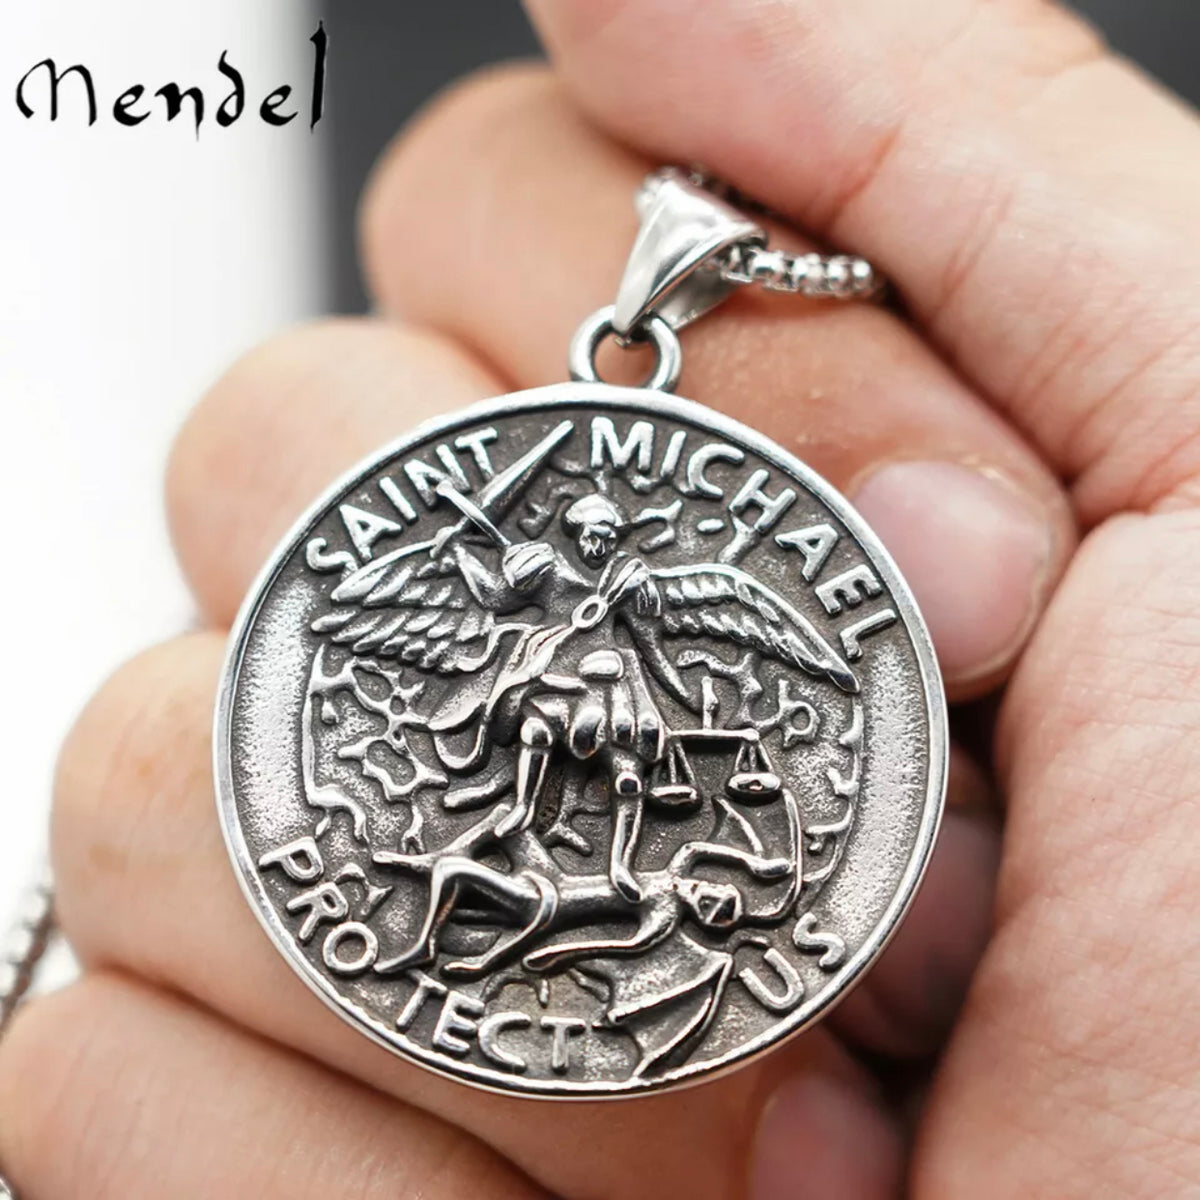 Mens Christian Archangel Saint Michael Pendant Necklace